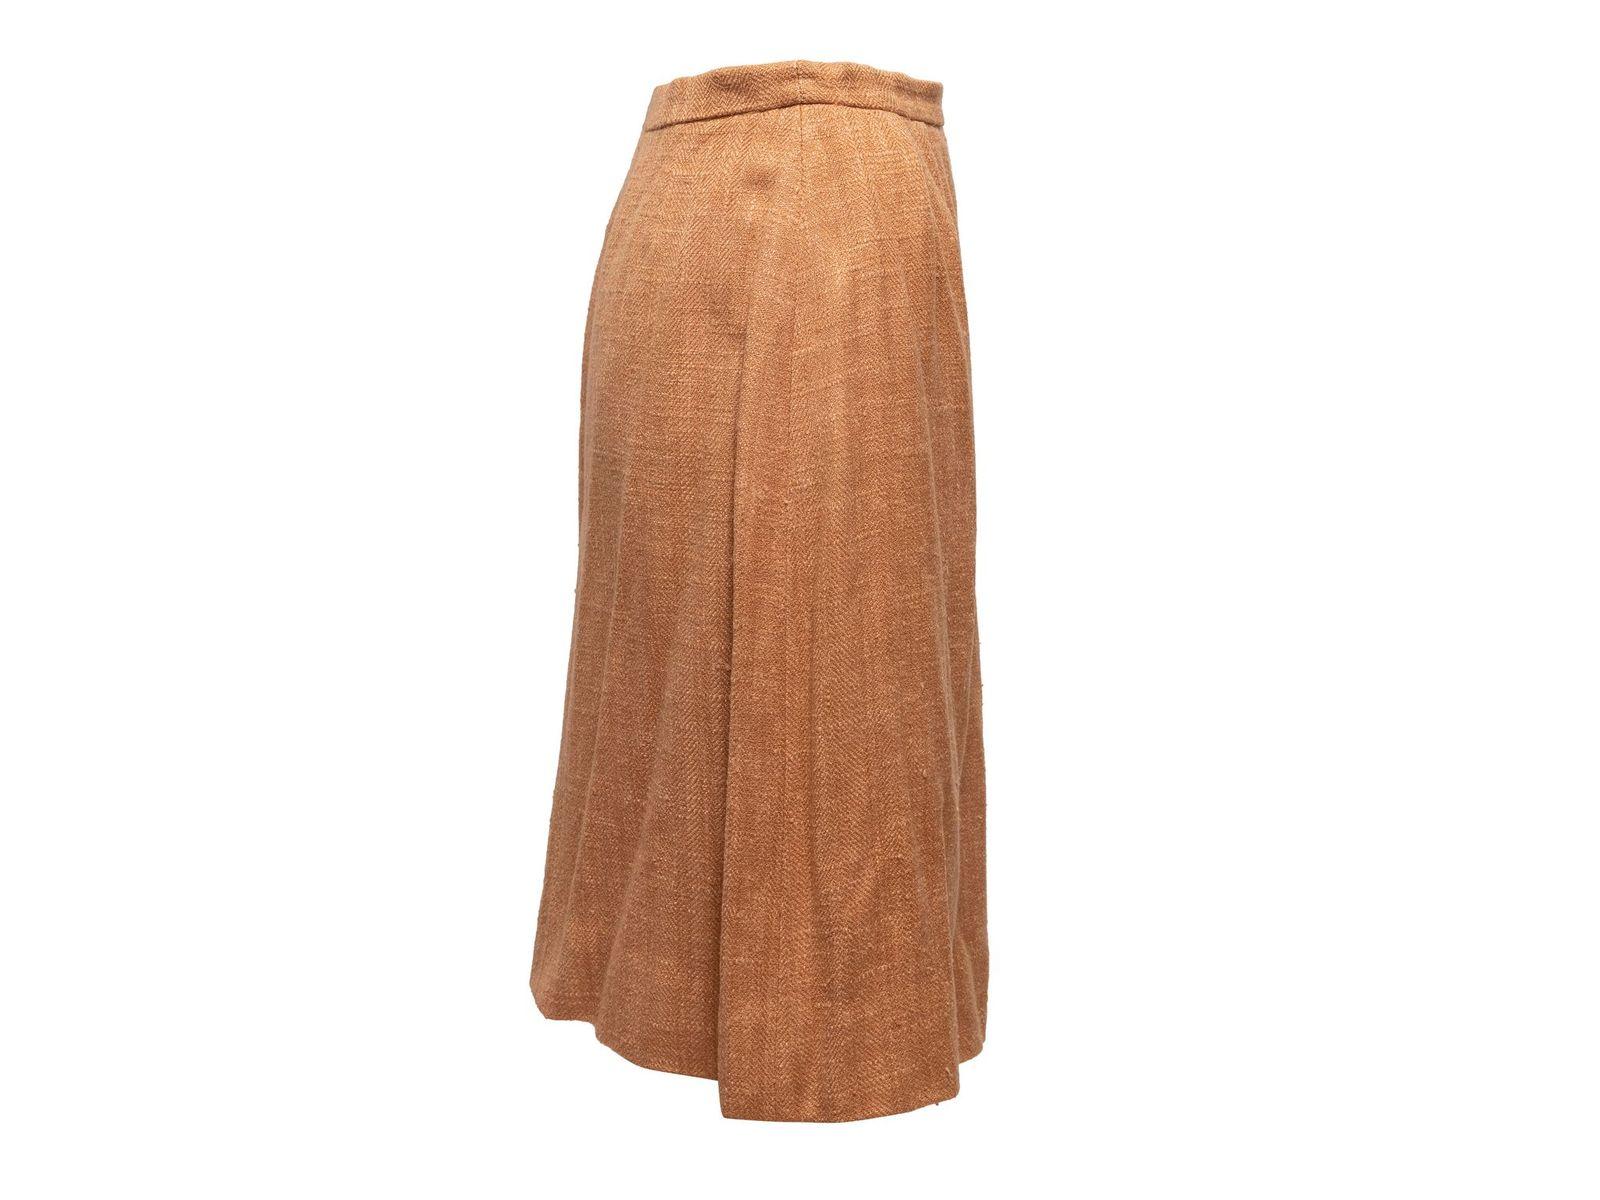 Hermes Tan Tweed Skirt Suit 1